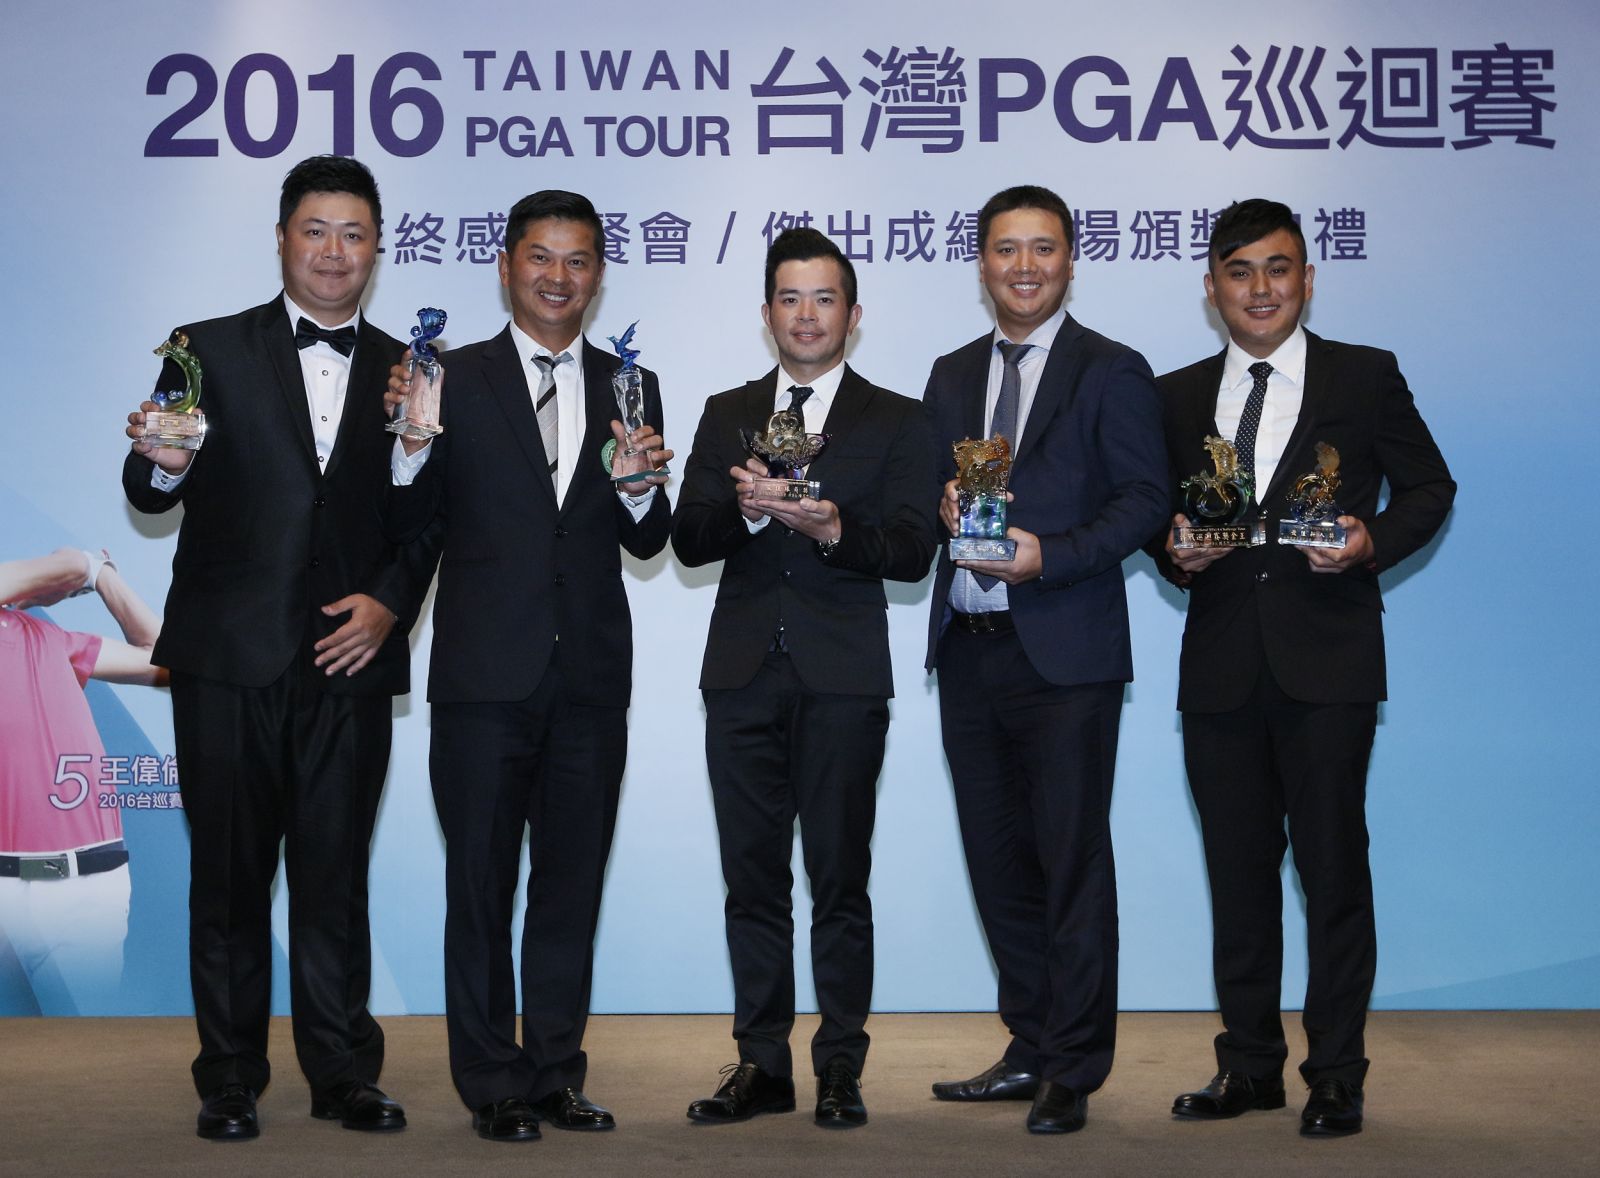 得獎選手(左起)許豪升、林文堂、詹世昌、呂偉智、蔡哲弘。